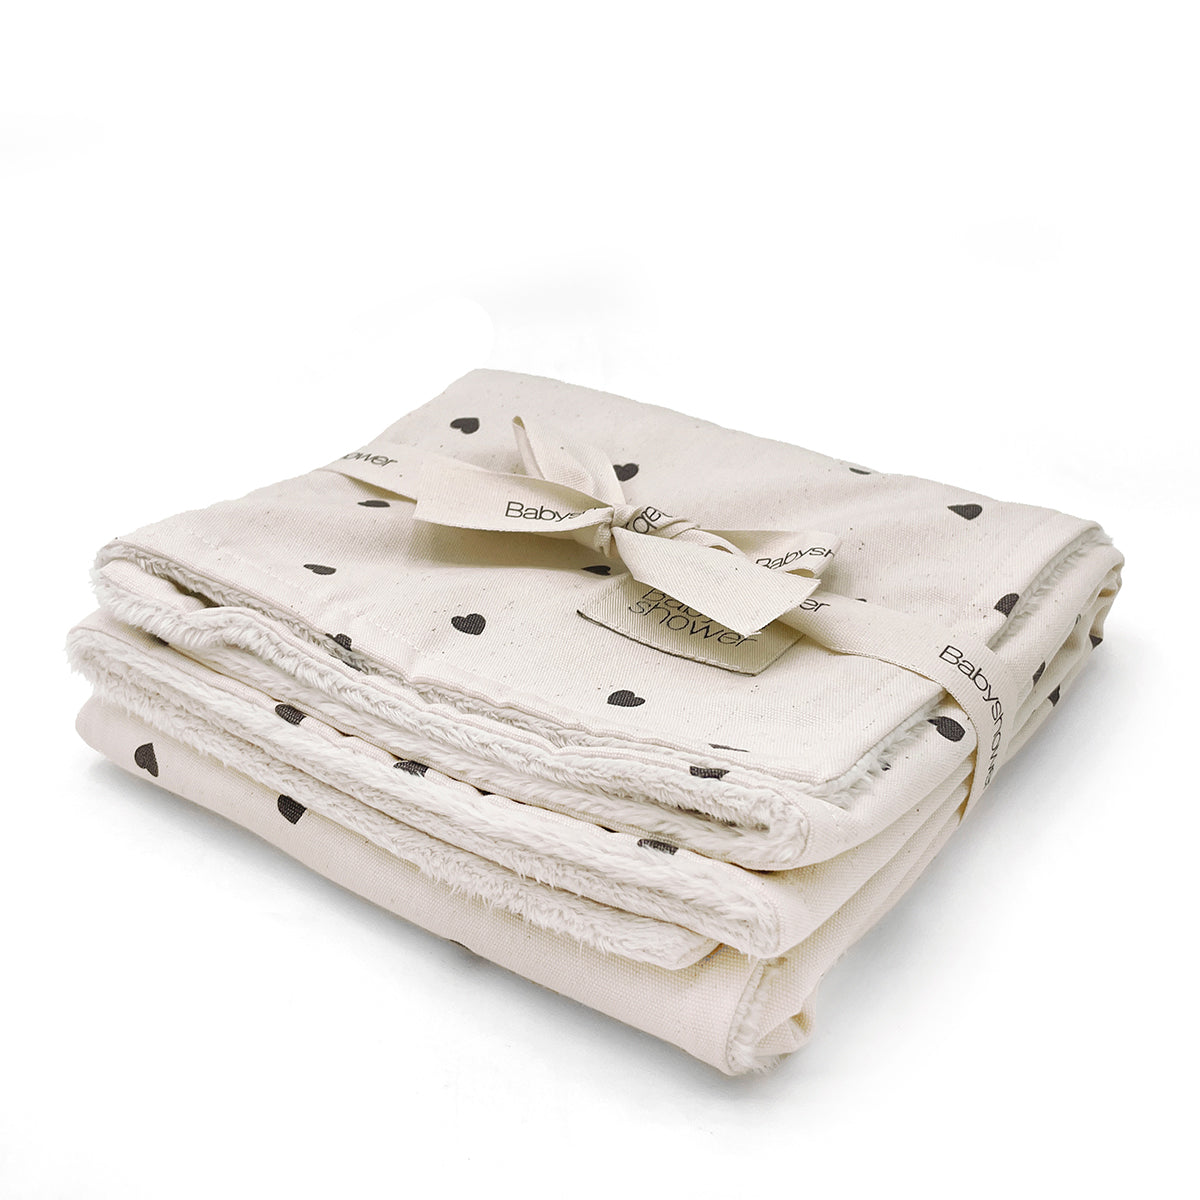 Stijlvol, warm en luxe! De fleece deken in rock & love van Babyshower! Veelzijdig in gebruik. Verkrijgbaar in verschillende varianten. Machinewasbaar. Afmeting: 66x80 cm. VanZus